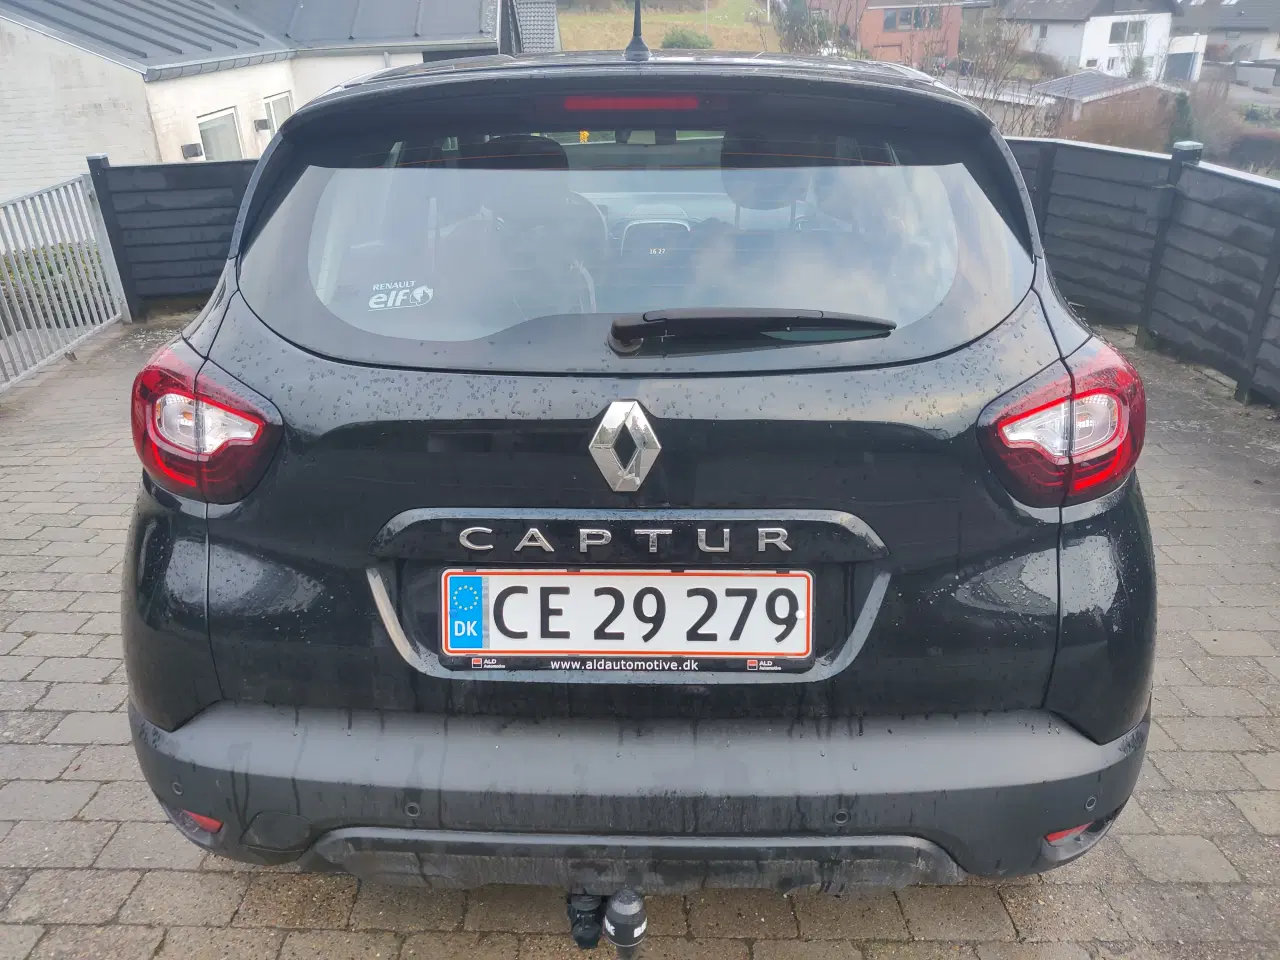 Billede 5 - Renault Captur - billigste 2018 Captur i DK